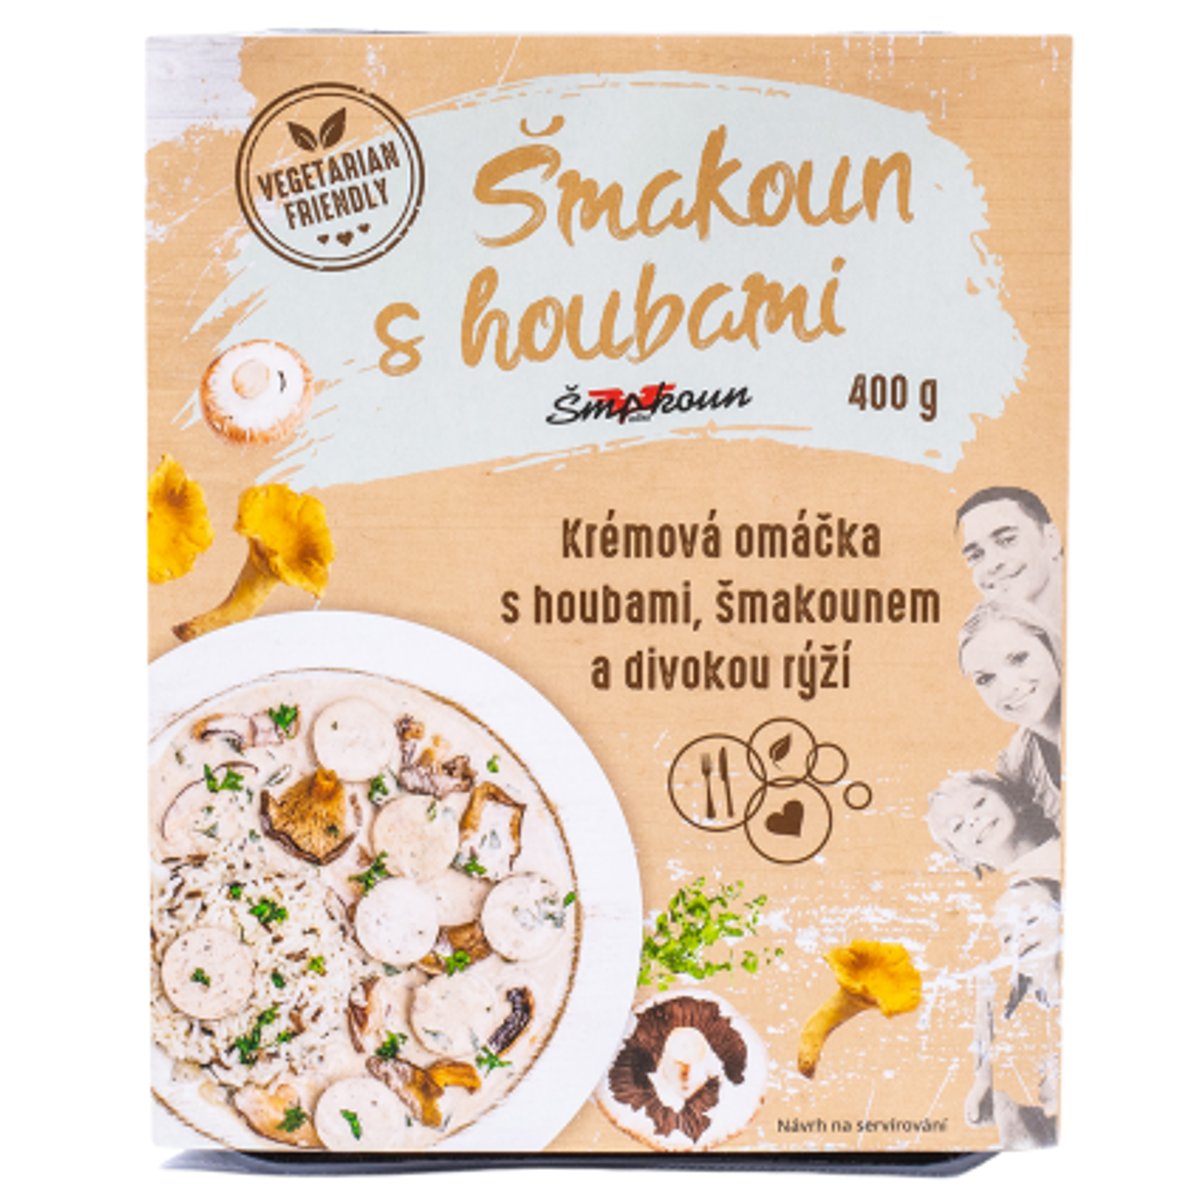 Šmakoun s houbami Krémová omáčka s houbami, šmakounem a divokou rýží